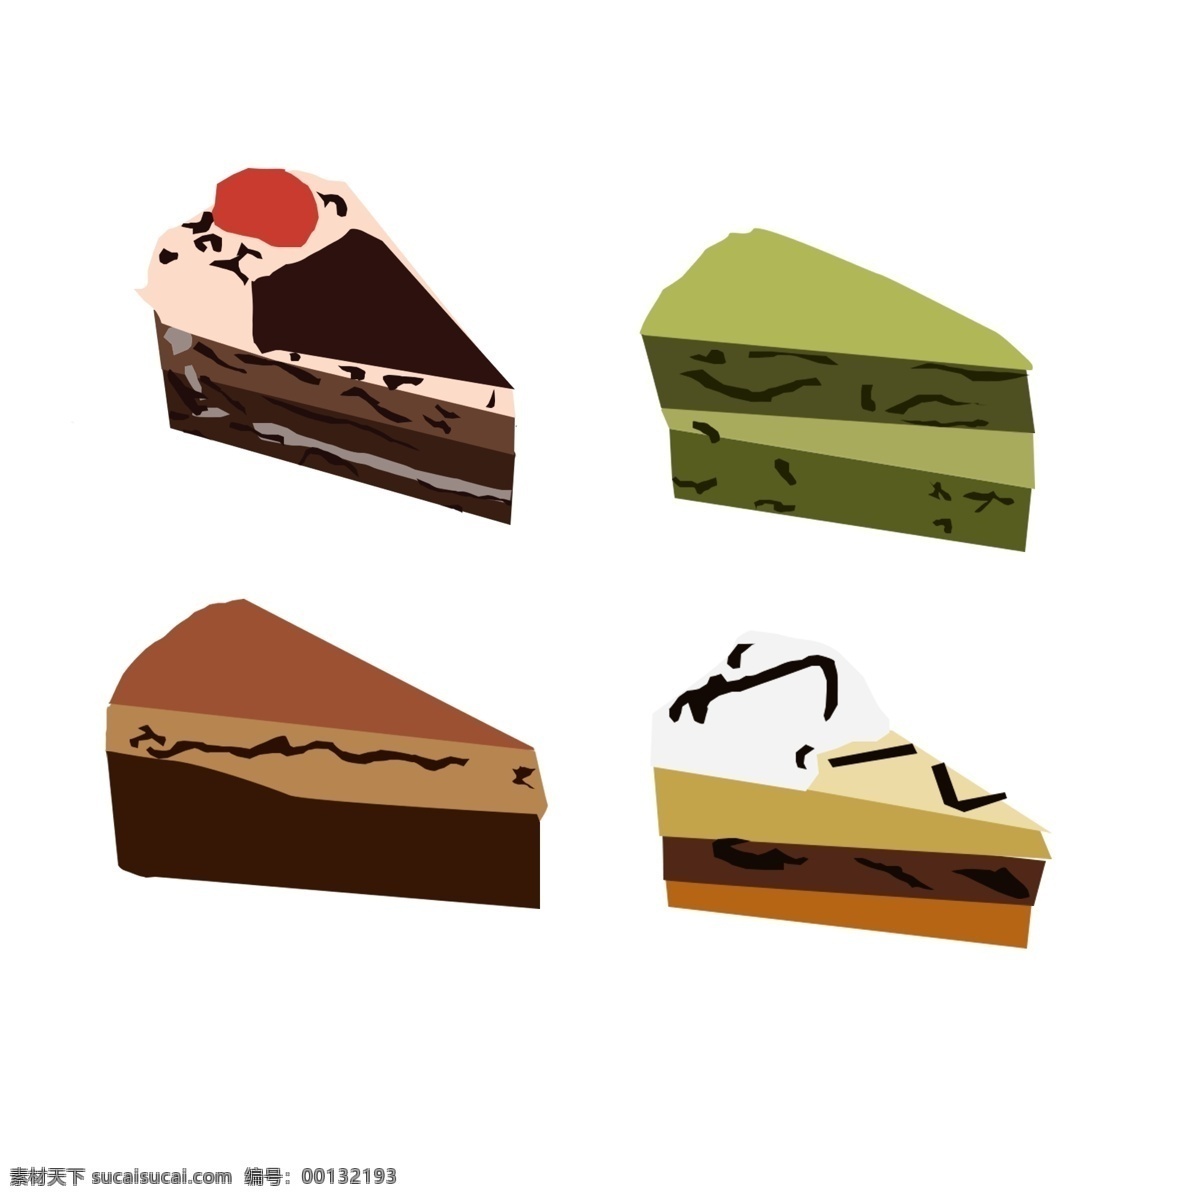 卡通 蛋糕 免 扣 矢量图 美味的 好看的 千层蛋糕 奶油蛋糕 红豆 抹茶粉 草莓蛋糕 平面图 餐厅 食物 装饰画